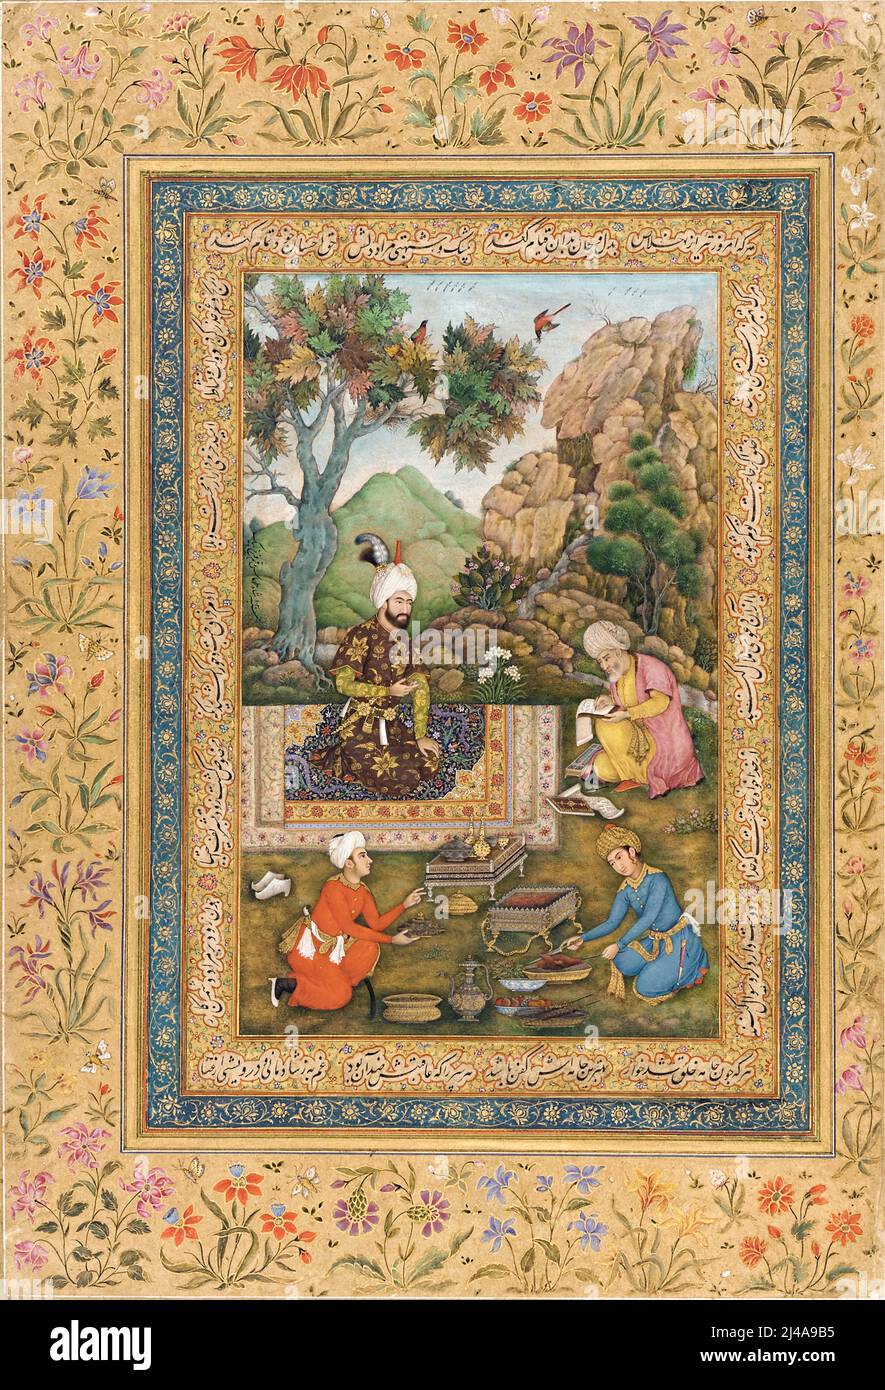 Shah Tahmasp dans les montagnes par l'artiste indien Farrukh Beg (c.1547-1619) peintre de cour au grand empereur Moghul Shah Jaha. Banque D'Images